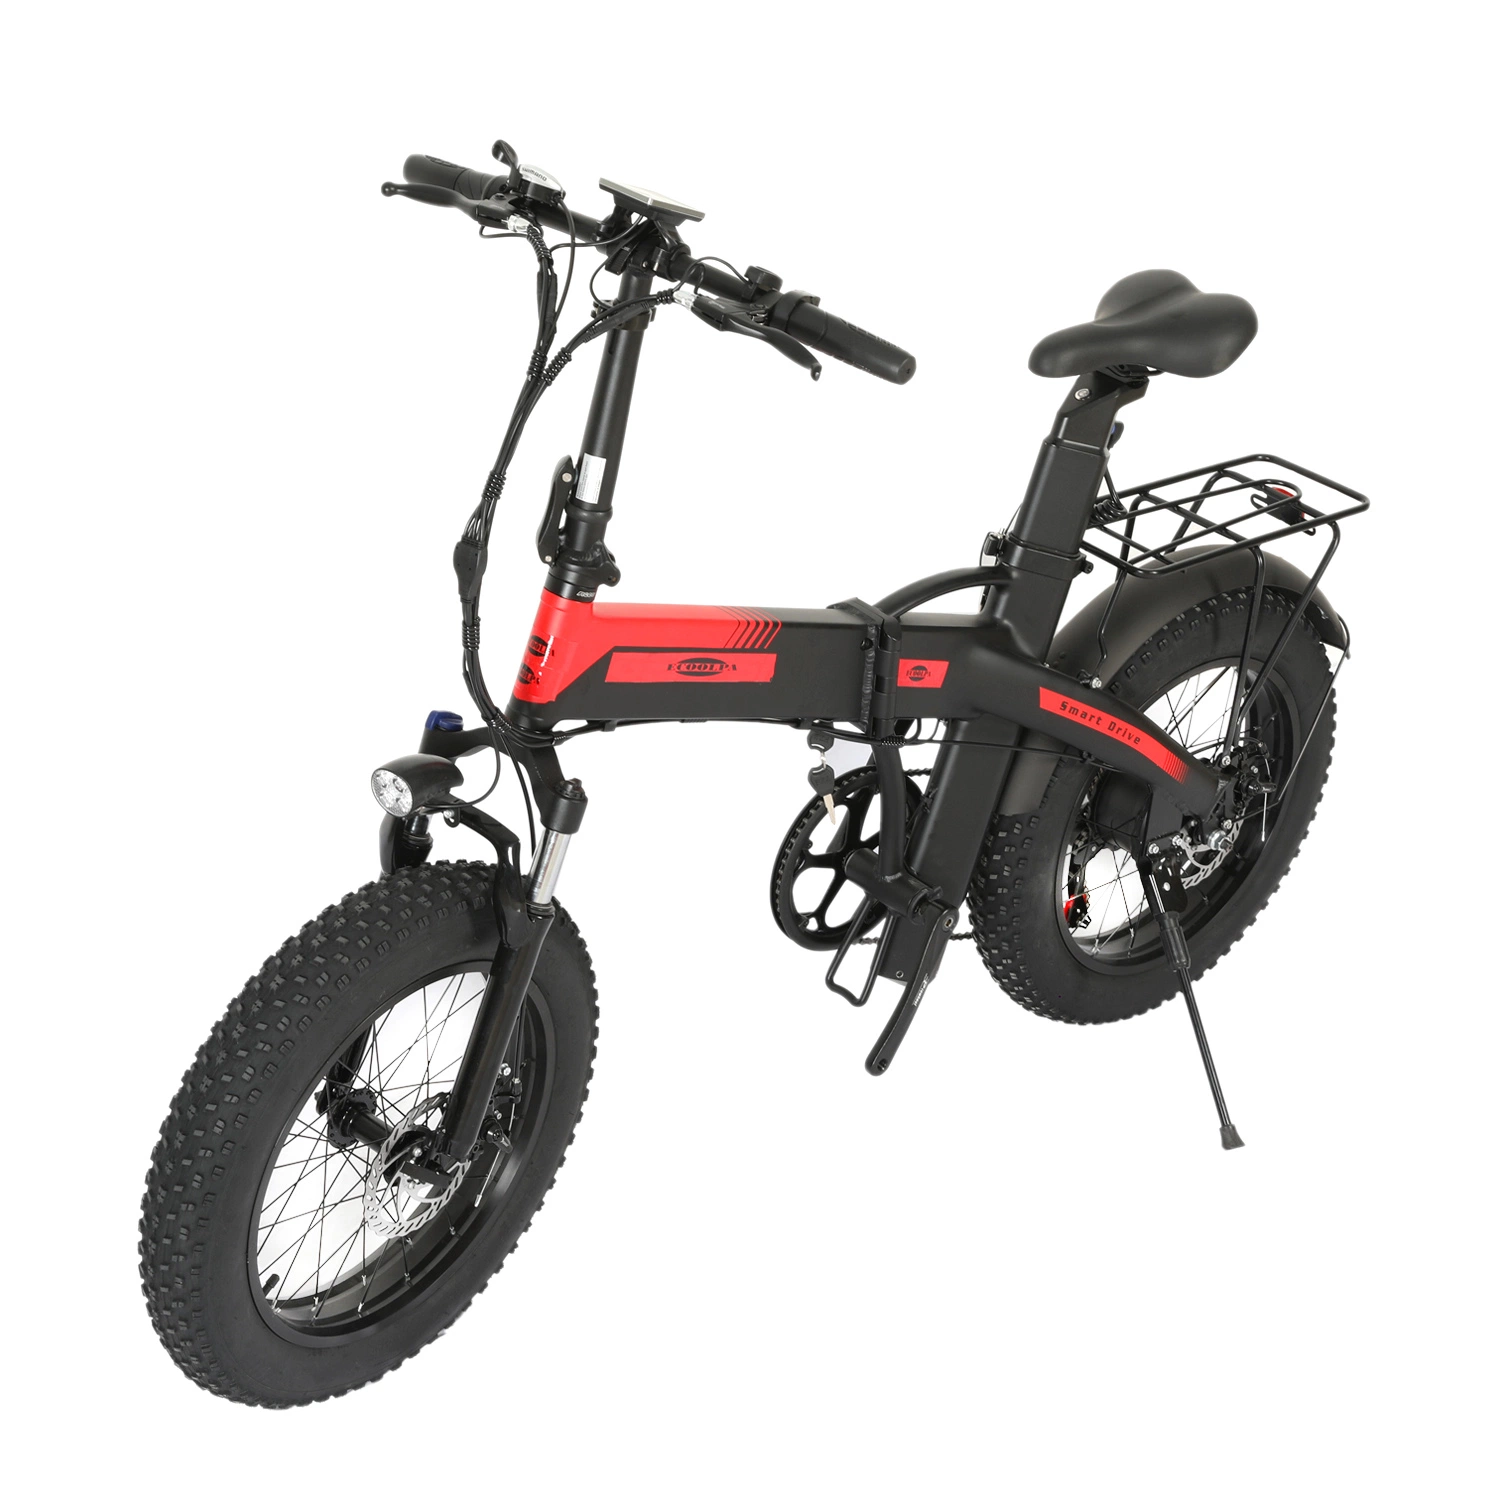 Bateria dupla 48 V 27,5 a, bicicleta elétrica articulada de montanha, bicicleta elétrica Moto citadina com suspensão dianteira de travão duplo com motor de 500 W.